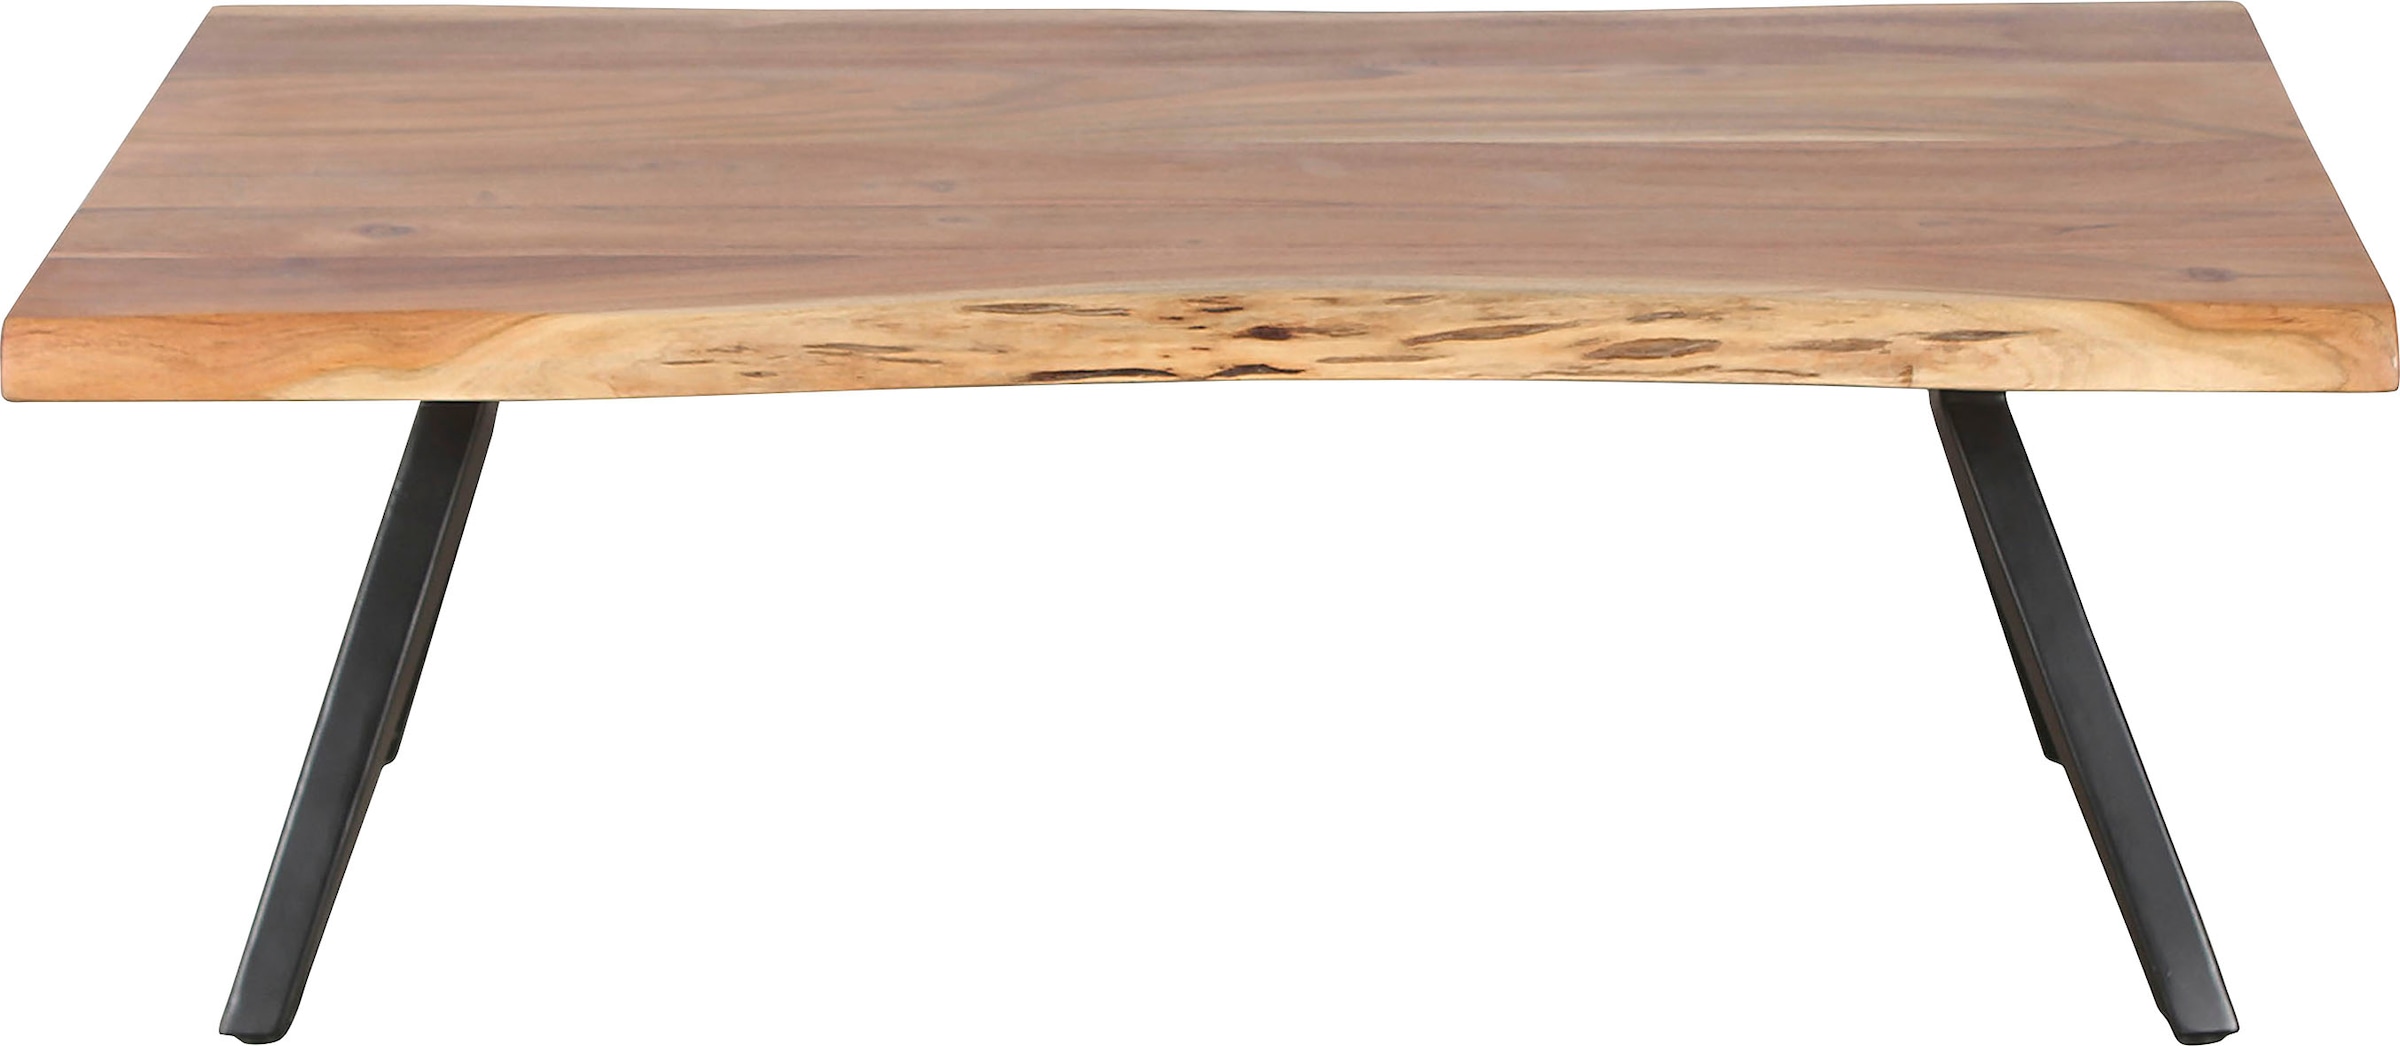 byLIVING Couchtisch »Cheta«, aus Massivholz Akazie 35mm, mit natürlicher Baumkante, Breite 115cm